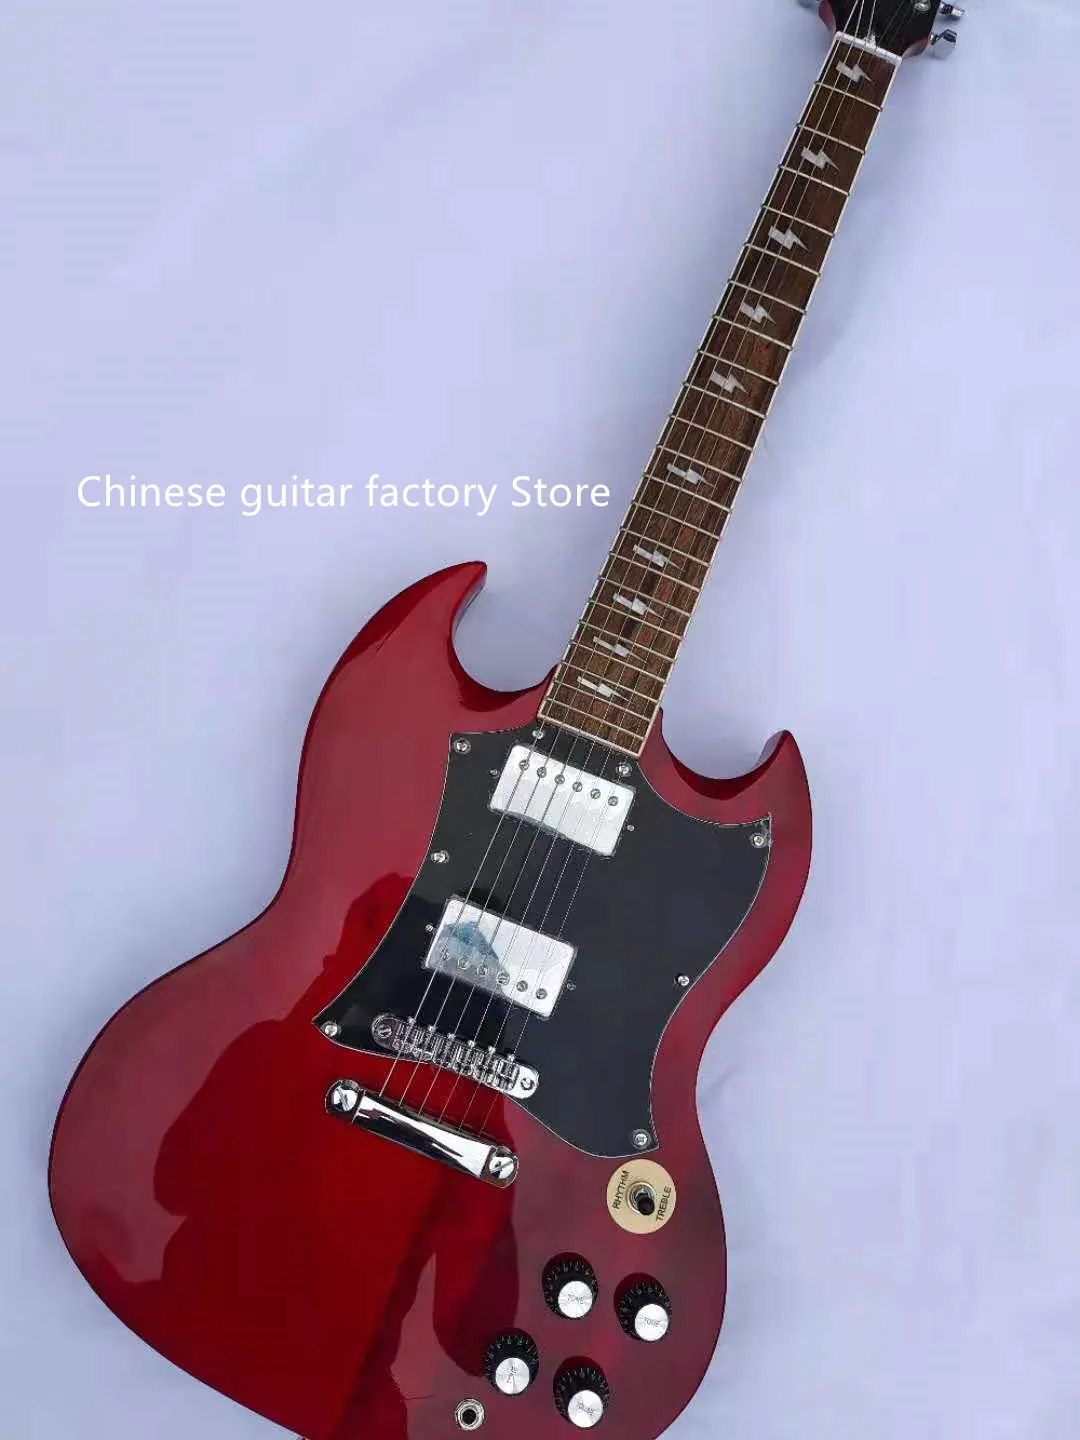 Электрическая гитара, гитара SG, корпус из красного дерева, фингерборд из розового дерева, винно-красный, точечная распродажа, бесплатная дос...